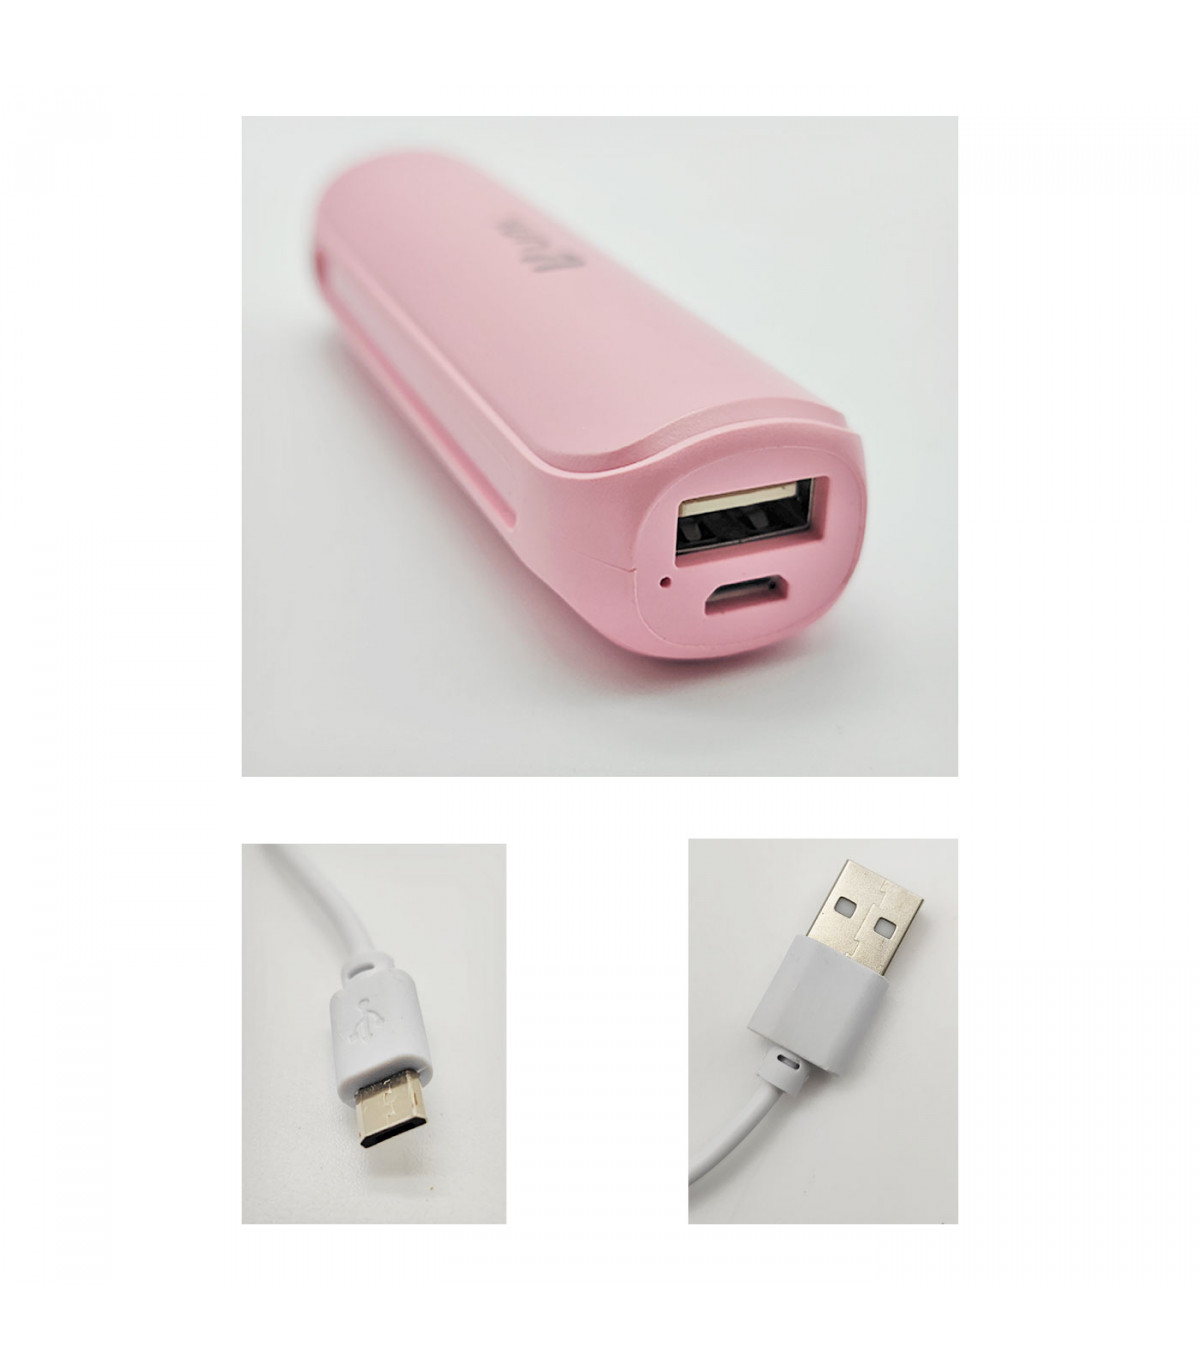 Batería externa rosa mAh, 1.0A, cable micro-USB, indicador carga LED, móvil, tablet, mp3, e-book, compatible con Xiaomi, Hu